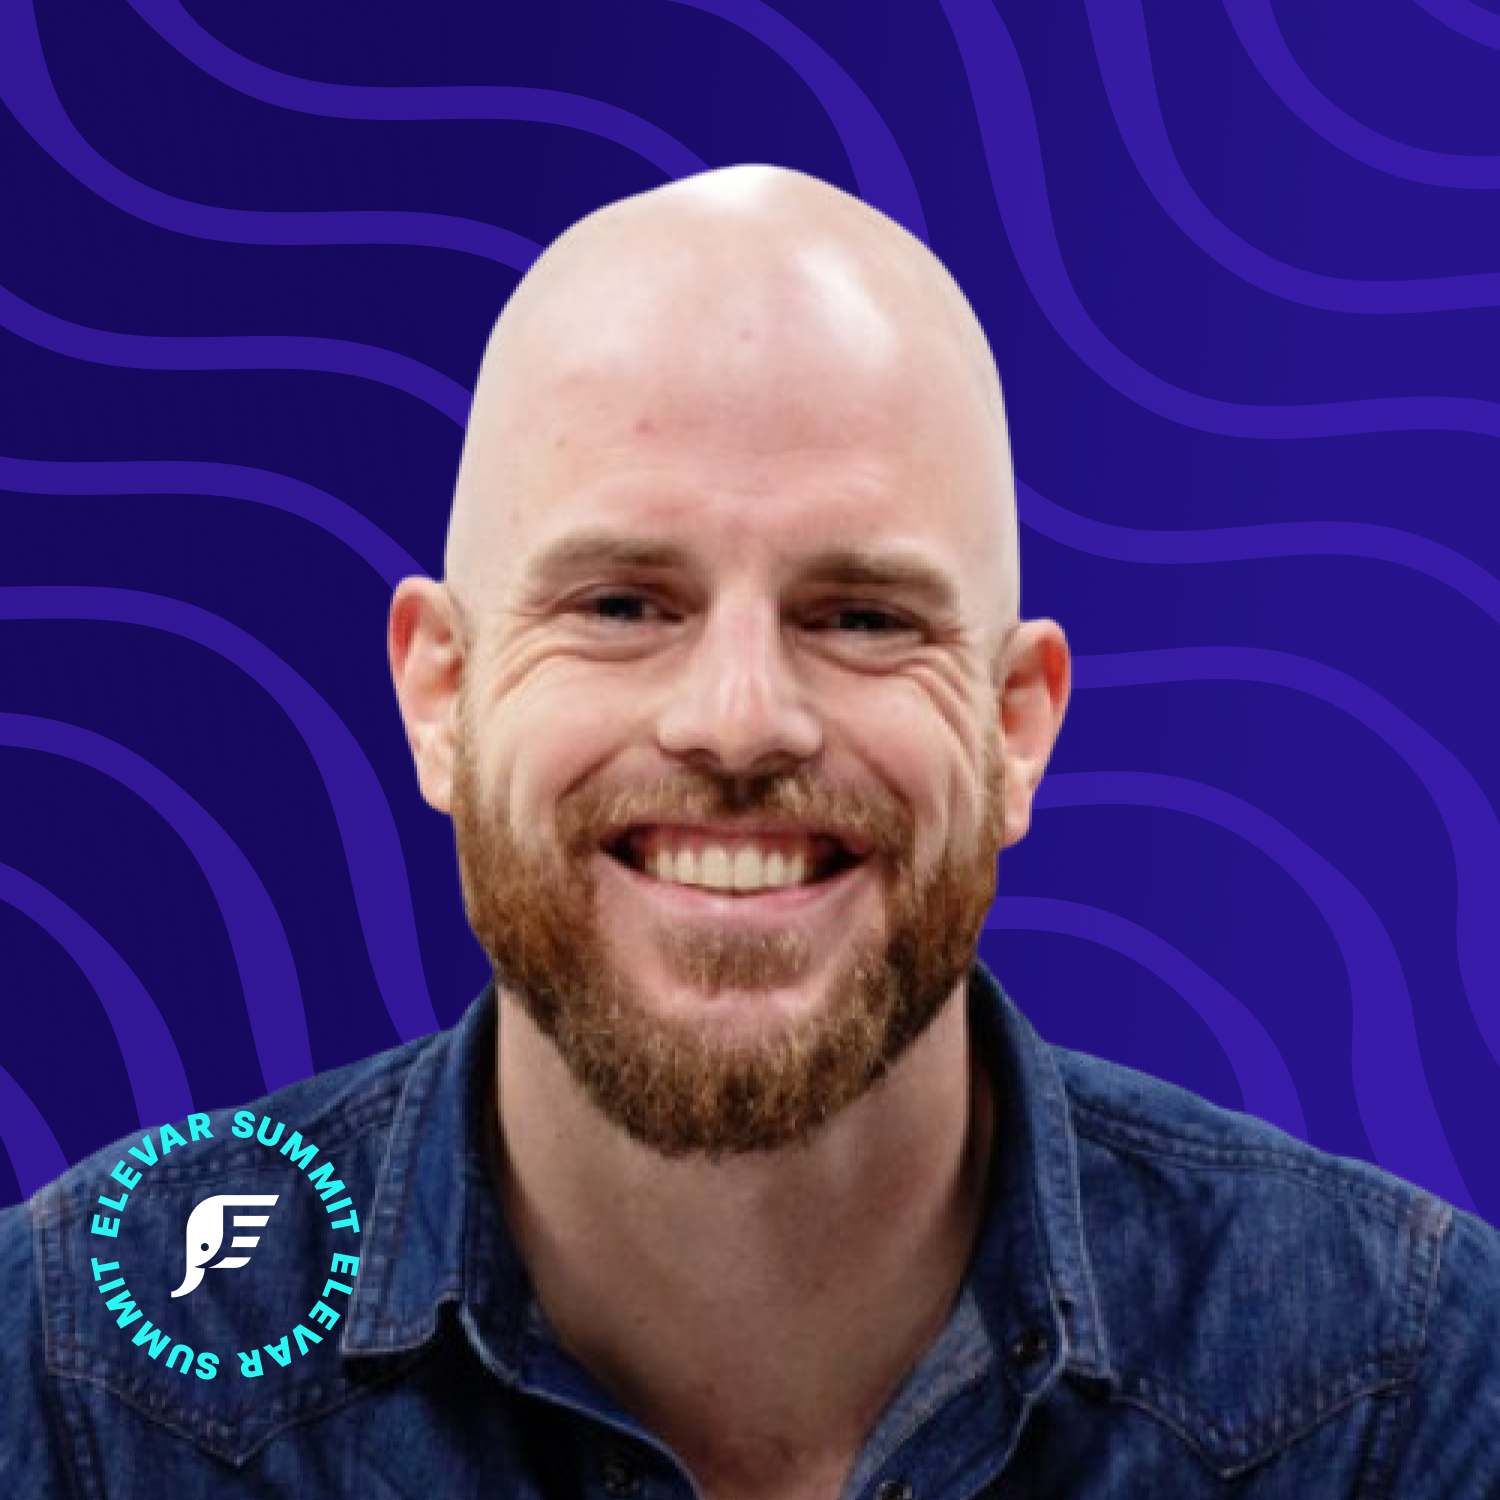 Headshot for Will Corbett on a dark purple background with Elevar Summit logo.